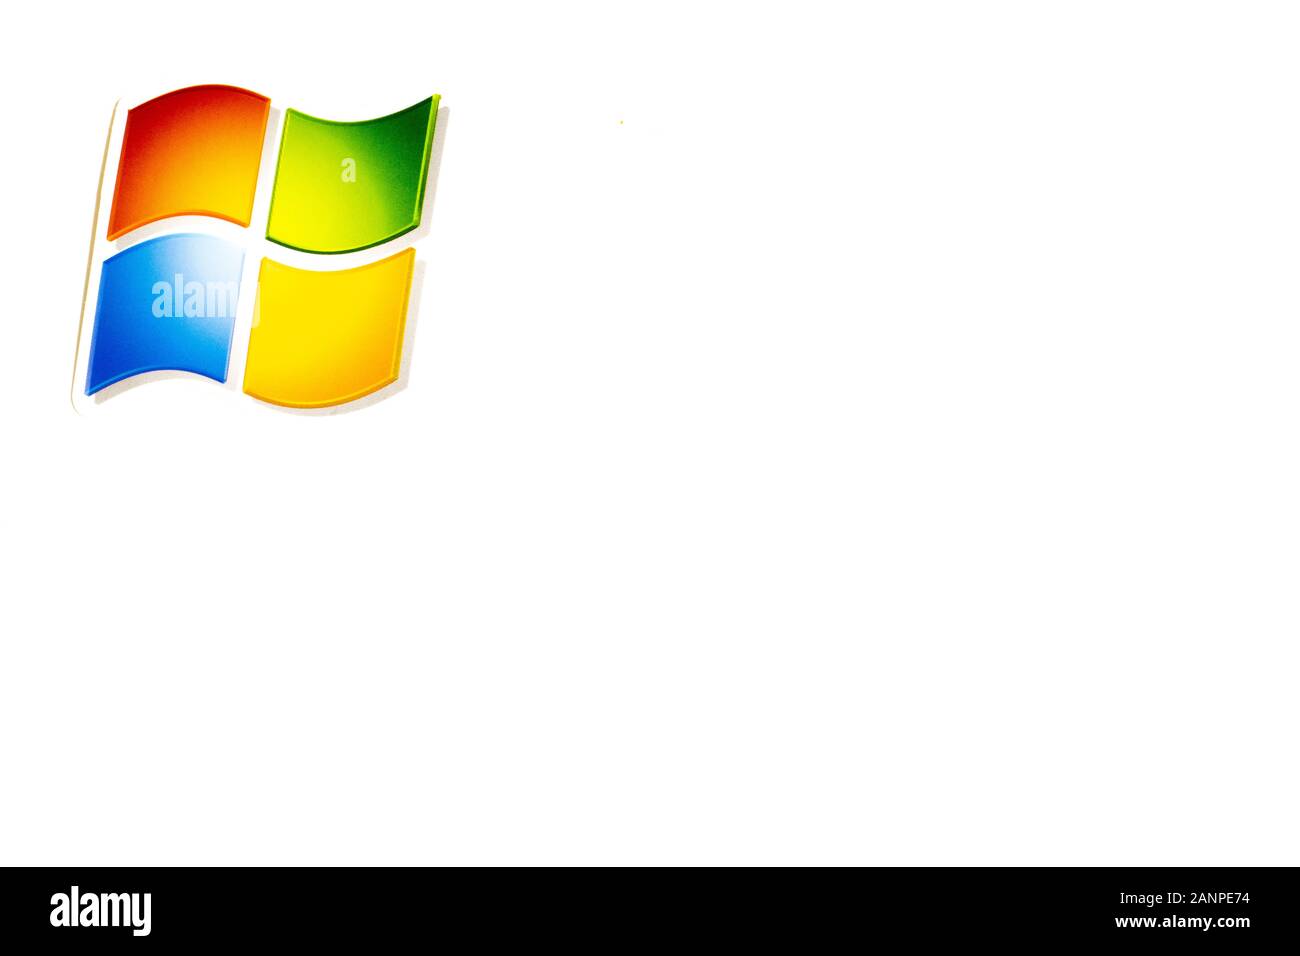 Los Angeles, Californie, États-Unis - 17 janvier 2020: Logo Windows sur fond blanc avec espace de copie, éditorial illustratif Banque D'Images